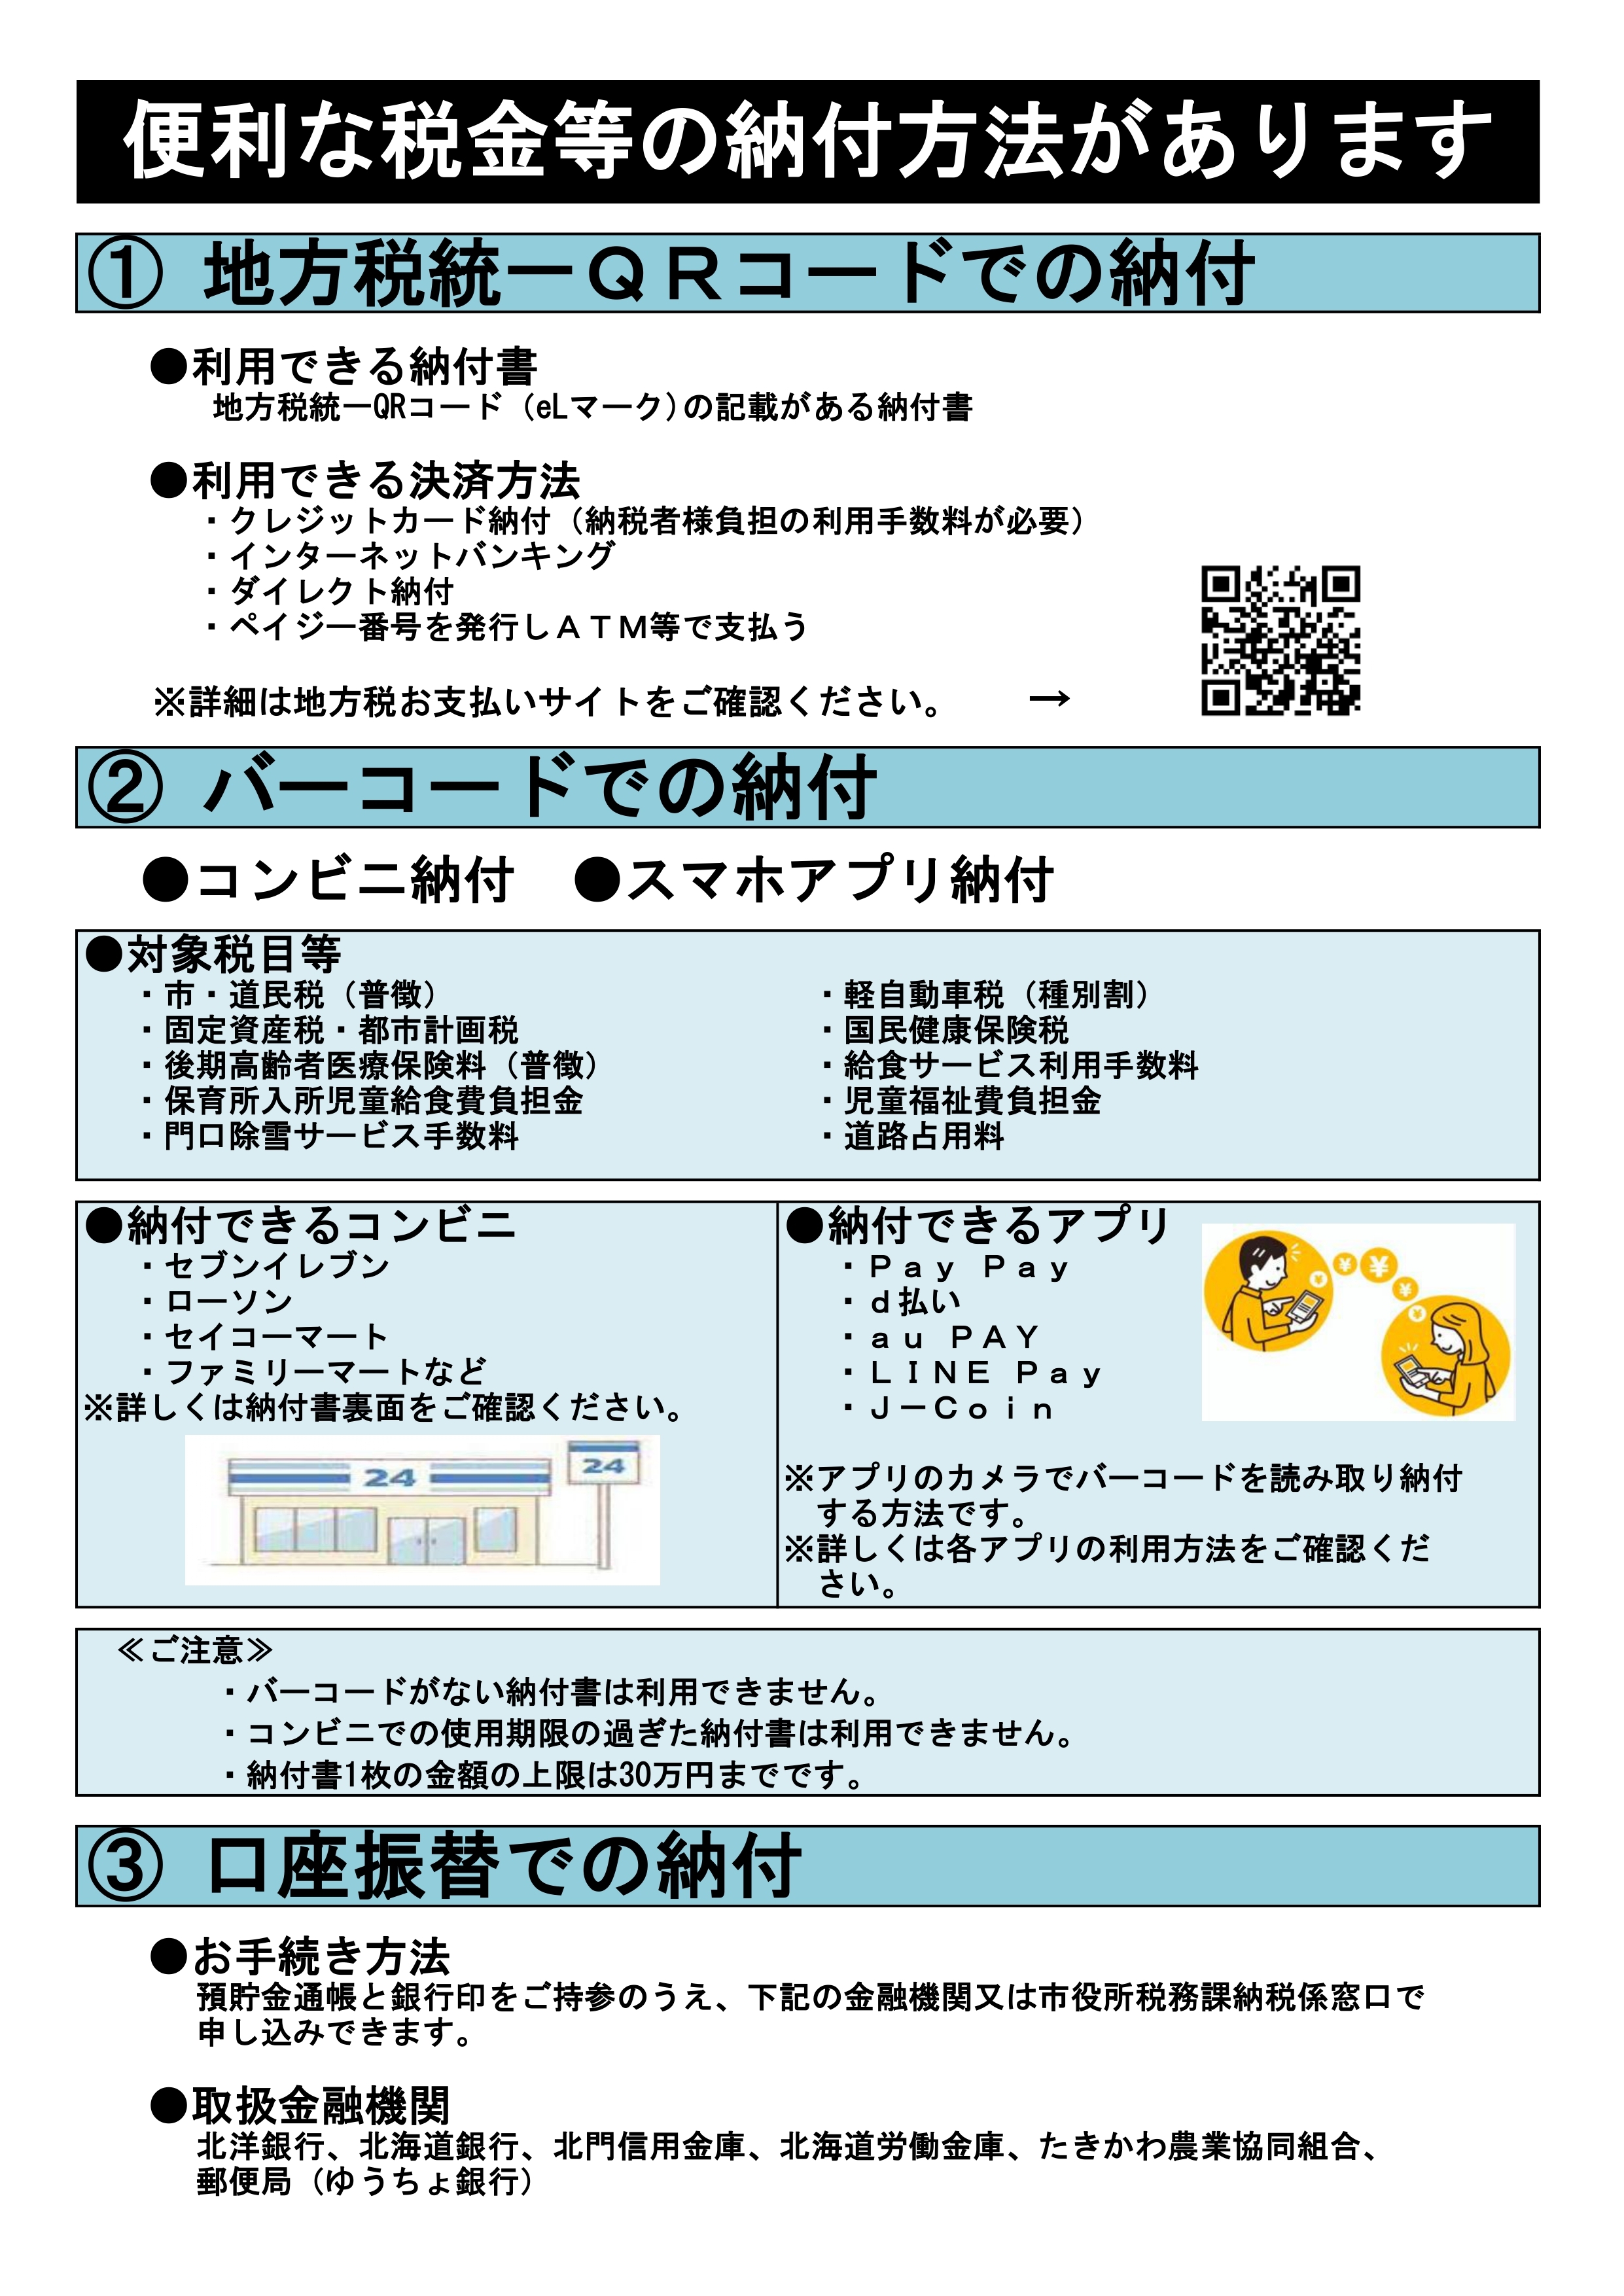 ☆R6納税カレンダー2_page-0001.jpg